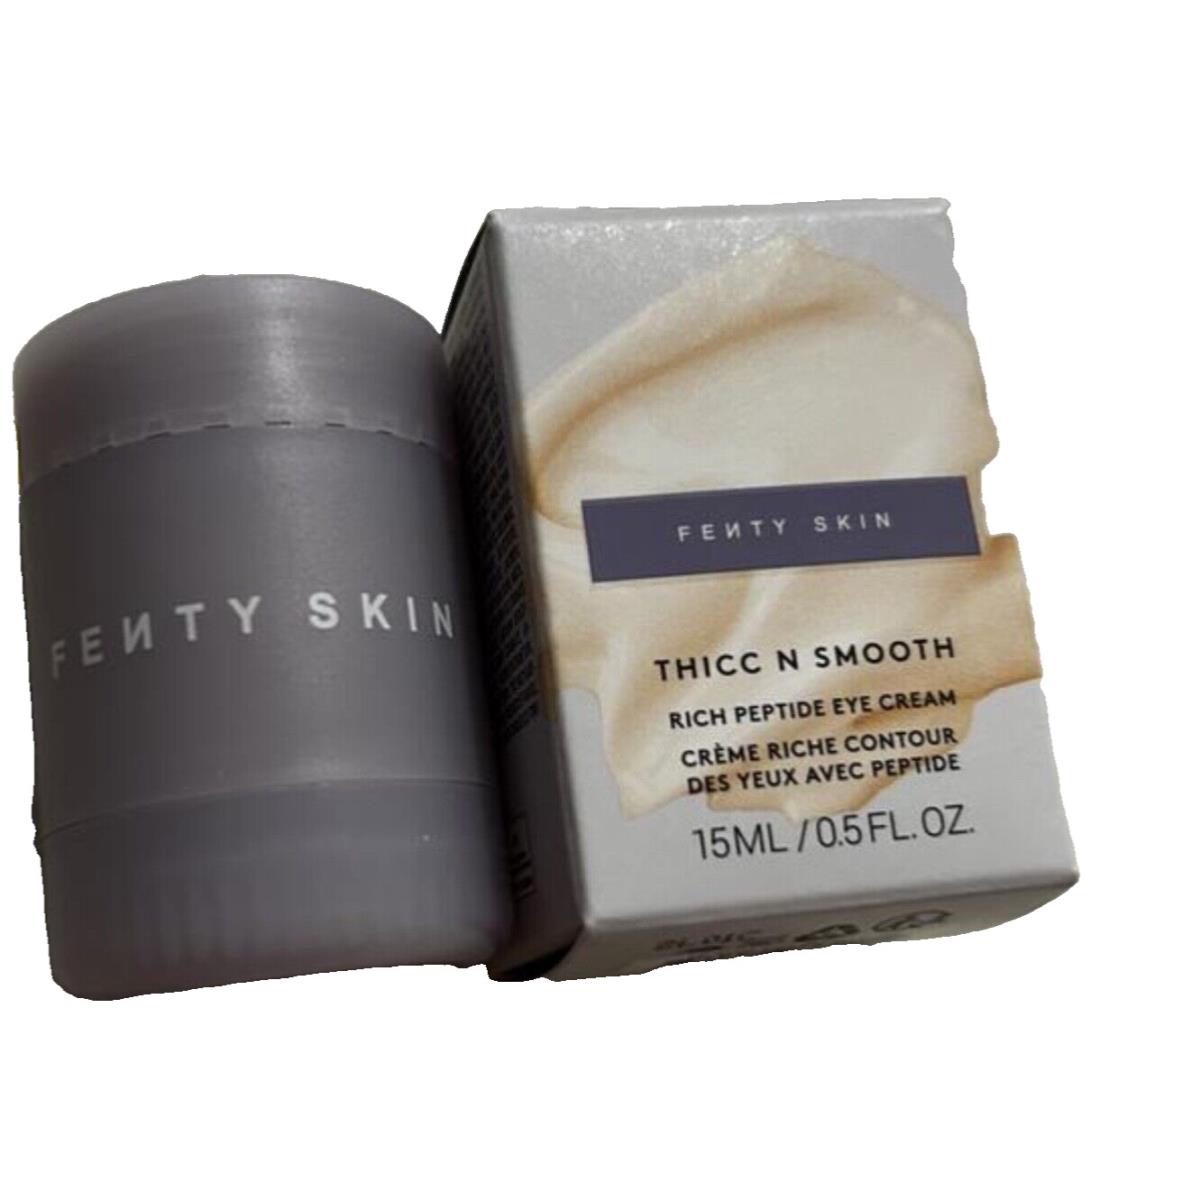 Fenty Skin Thicc N Smooth Rich Peptide Eye Cream 0.5 oz